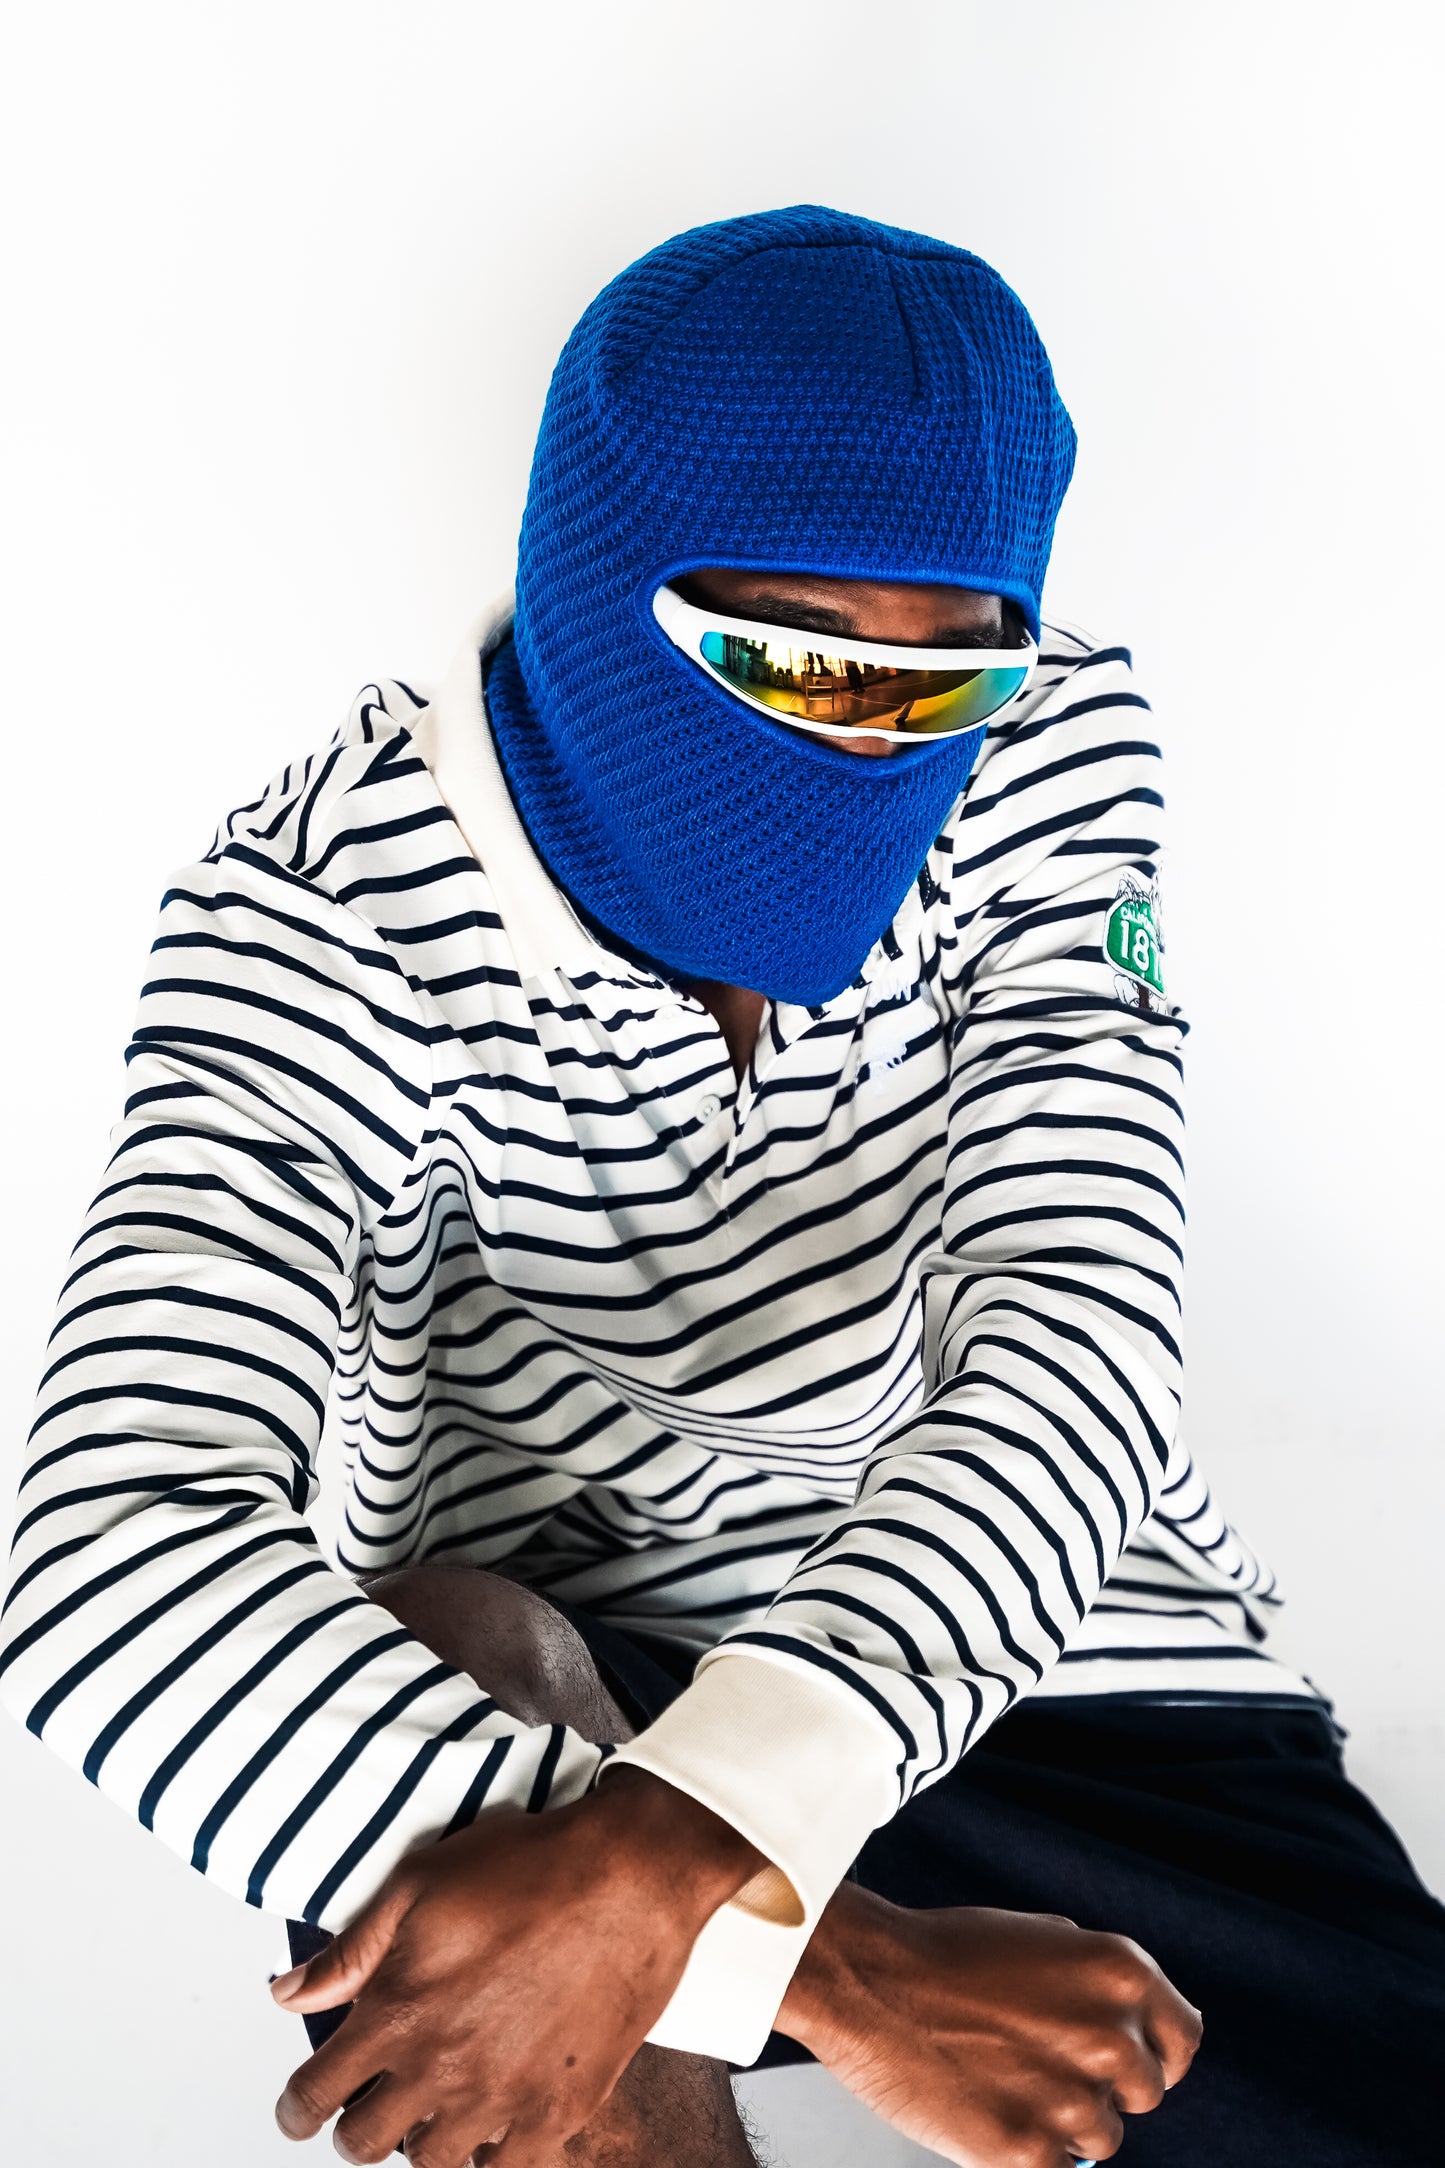 Trapt Knitted Balaclava Ski Mask